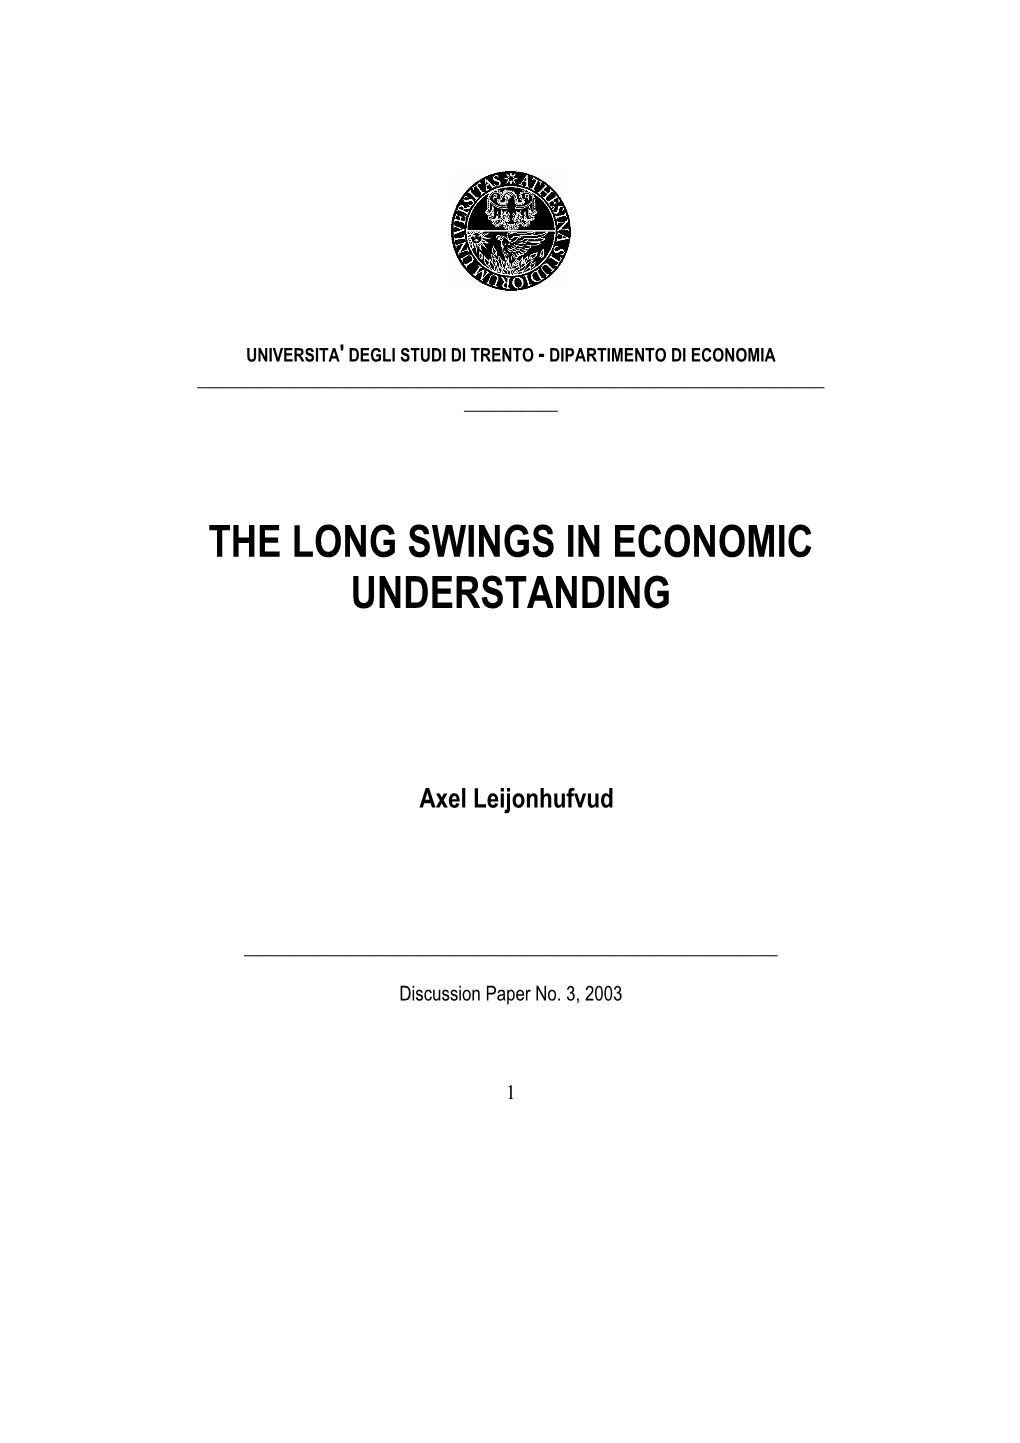 The Long Swings in Economic Understanding